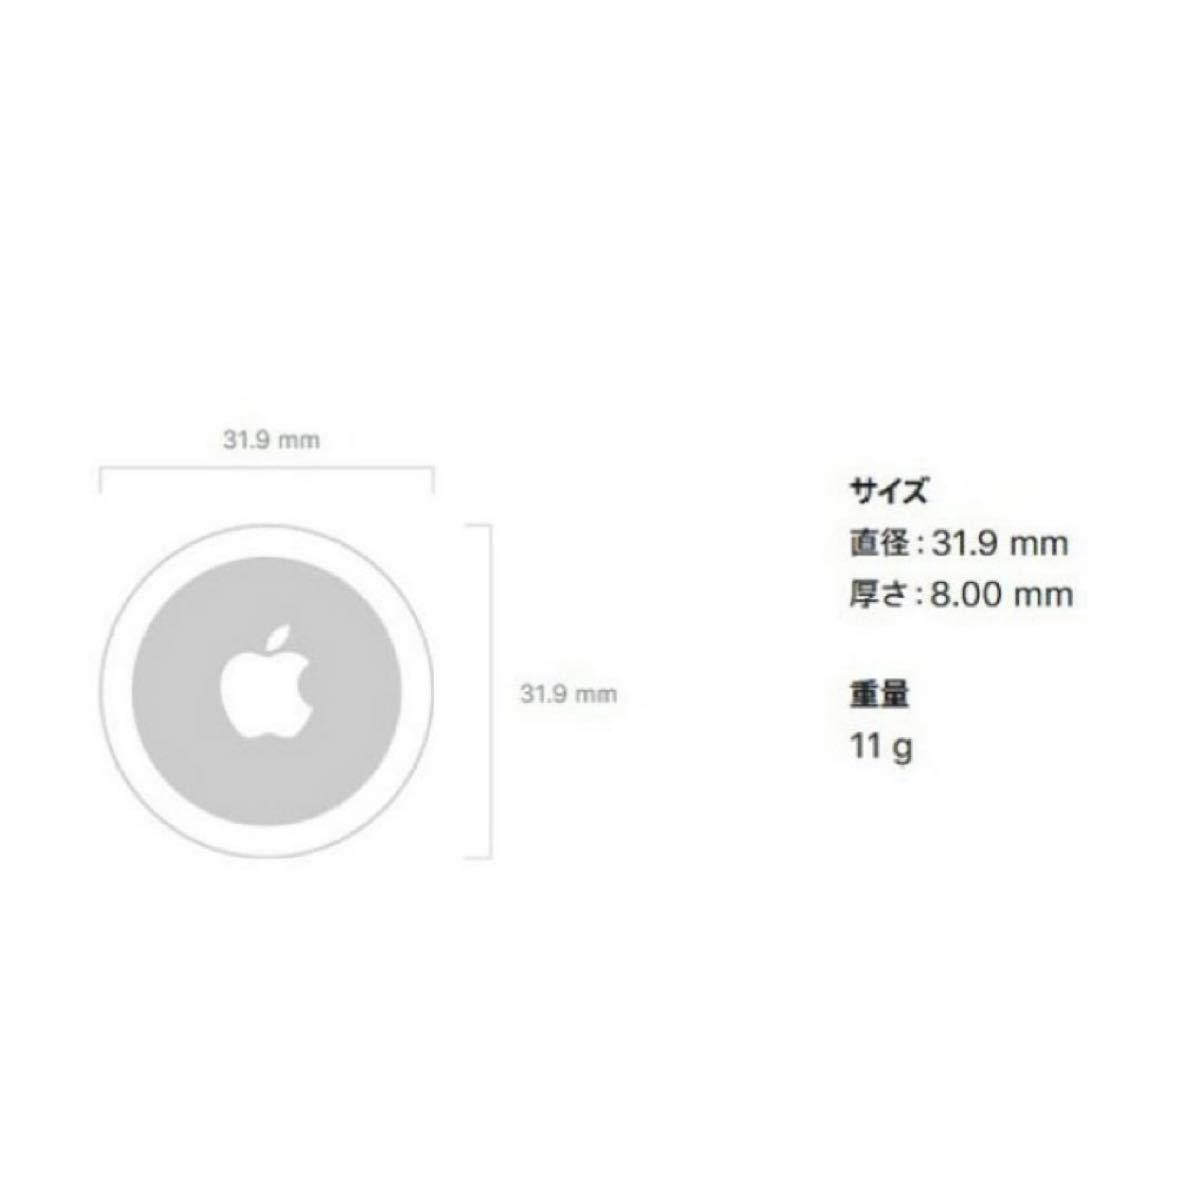 【新品未使用】 AirTag 1個 apple 最安値 【即日発送】